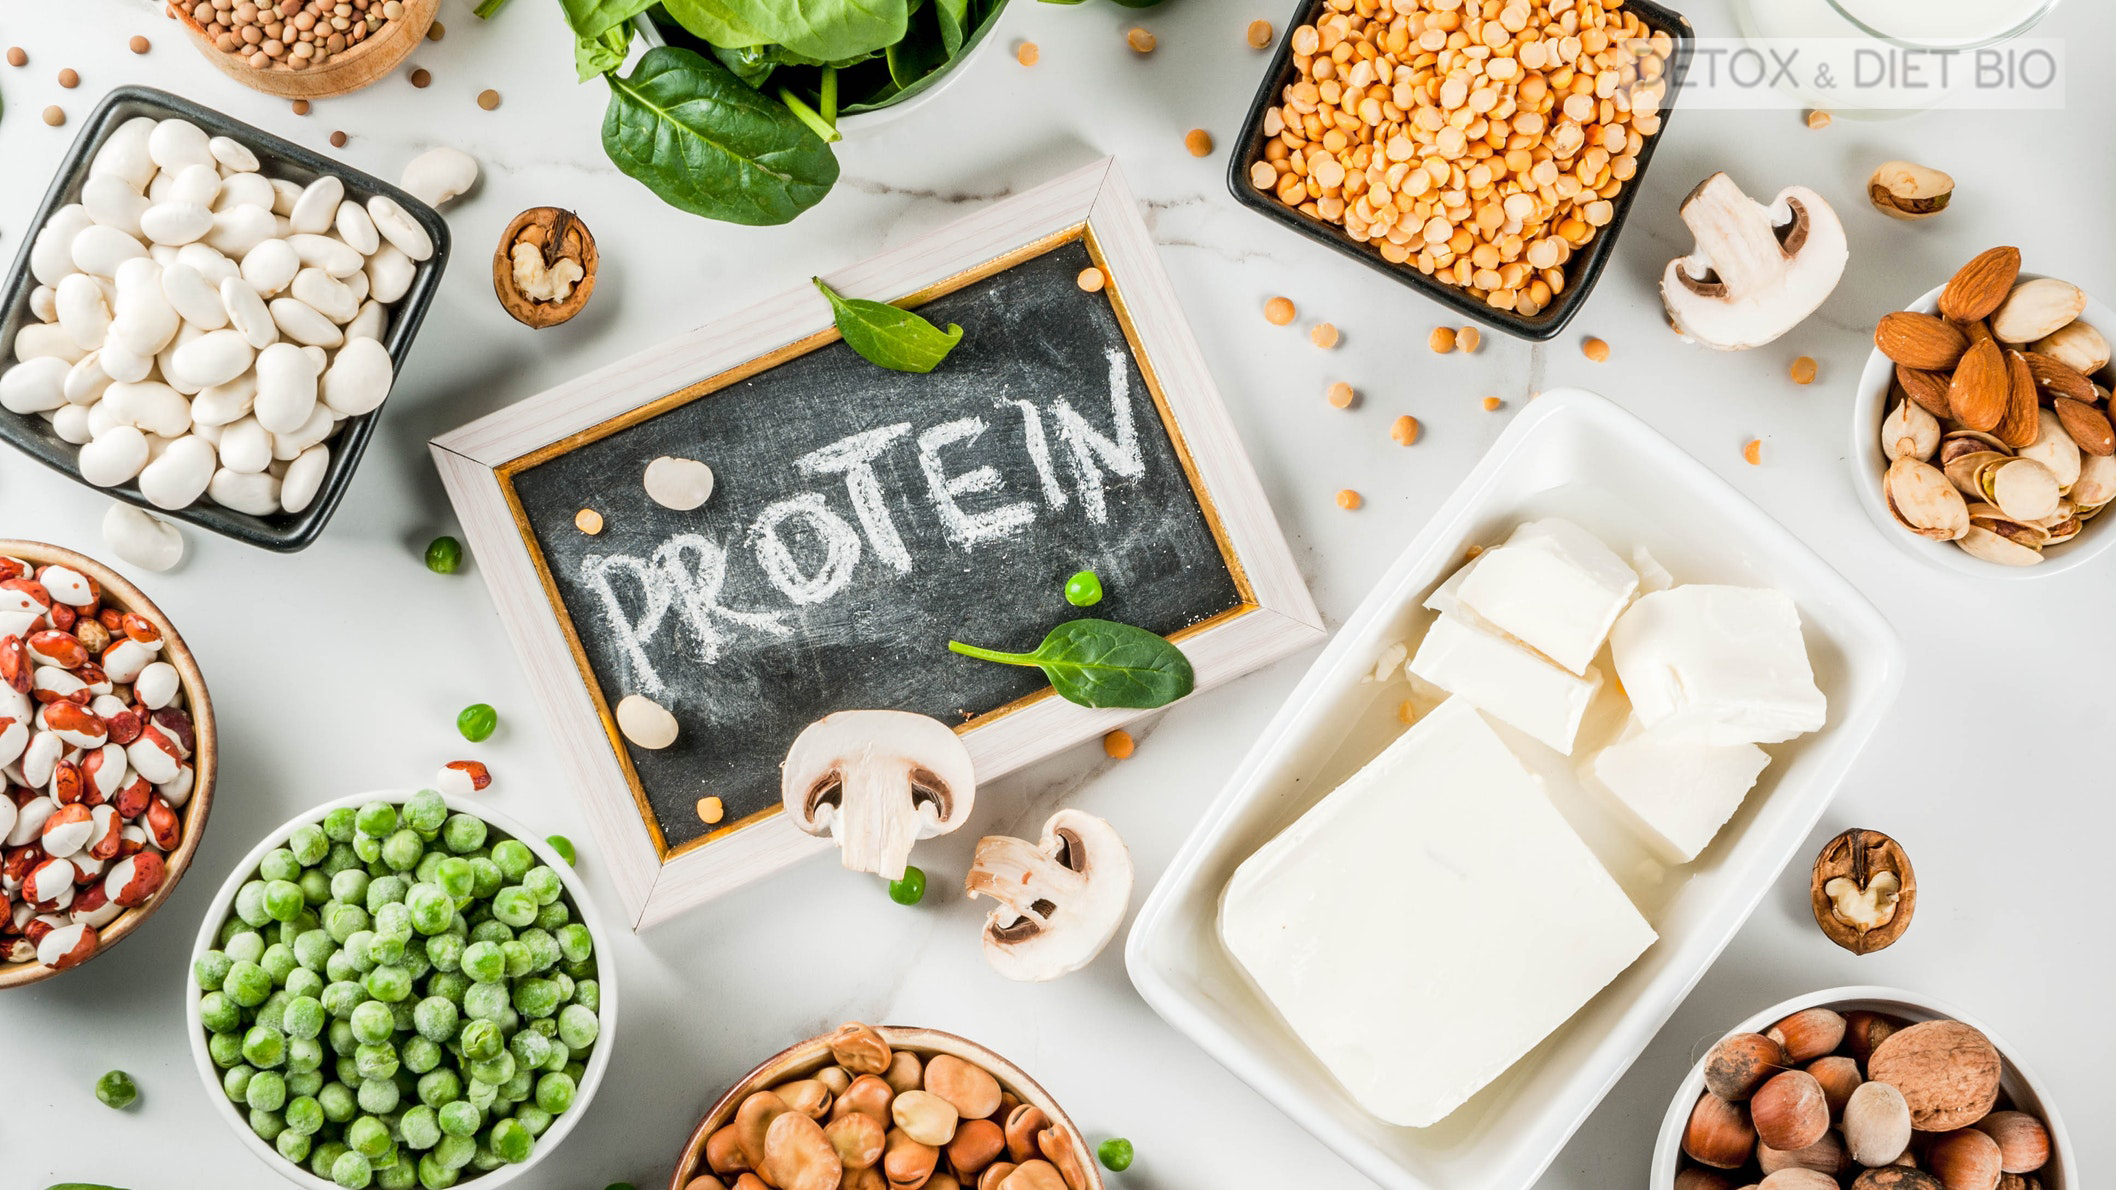 Bổ sung protein vào chế độ giảm cân hiệu quả